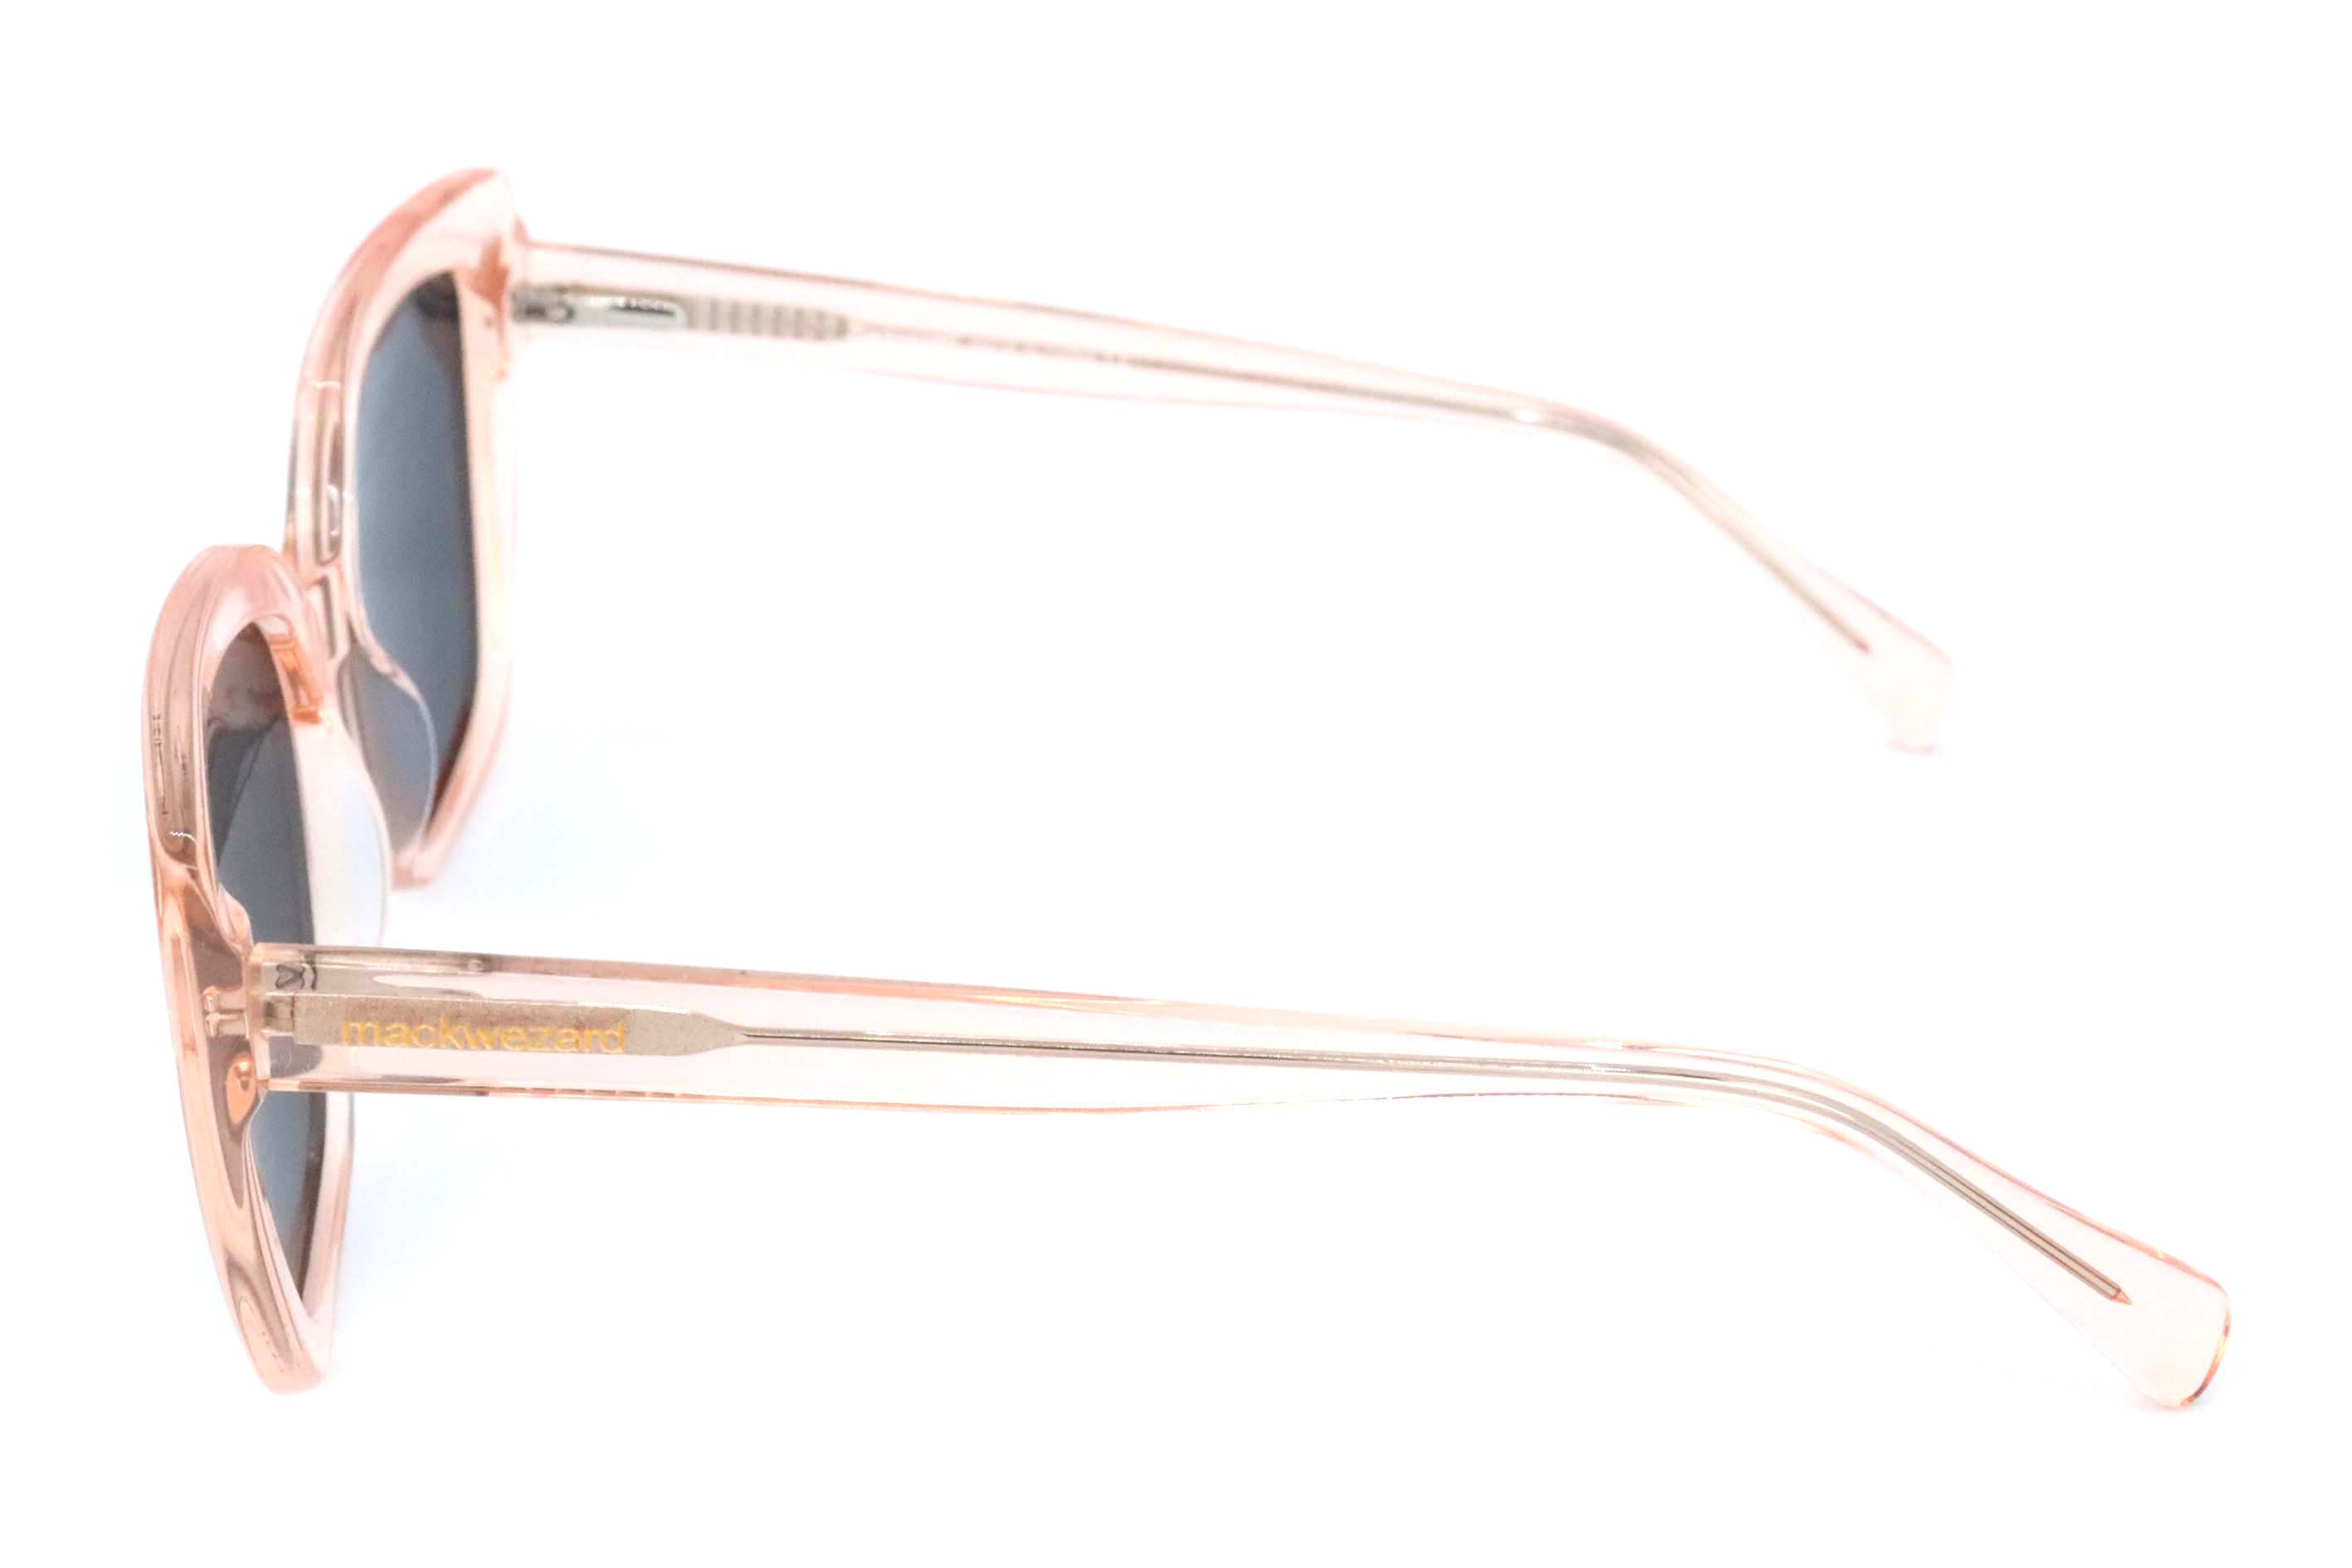 MackWezard Sunglasses -yc31057-c3-52-19-145